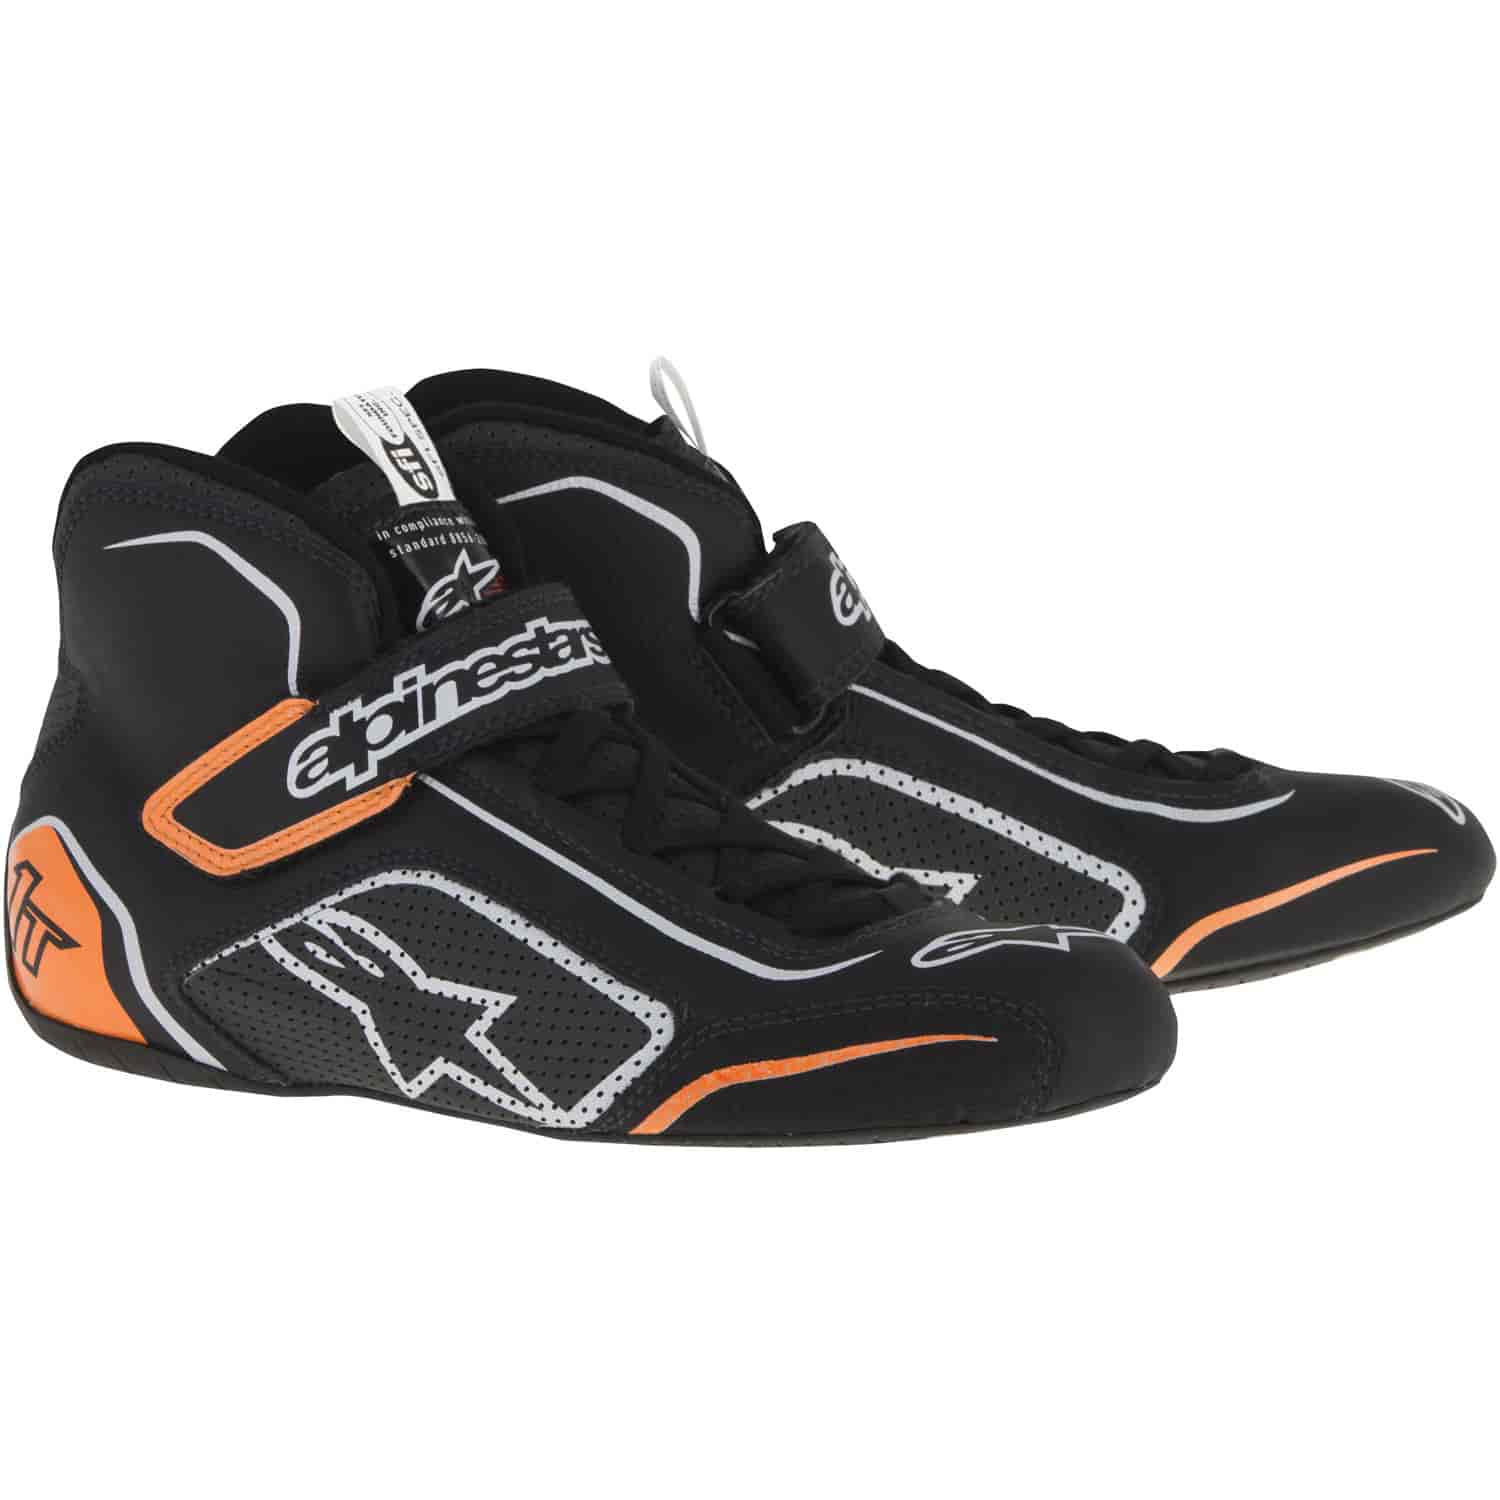 Tech 1-T Shoes Black/Orange/Silver SFI 3.3/5